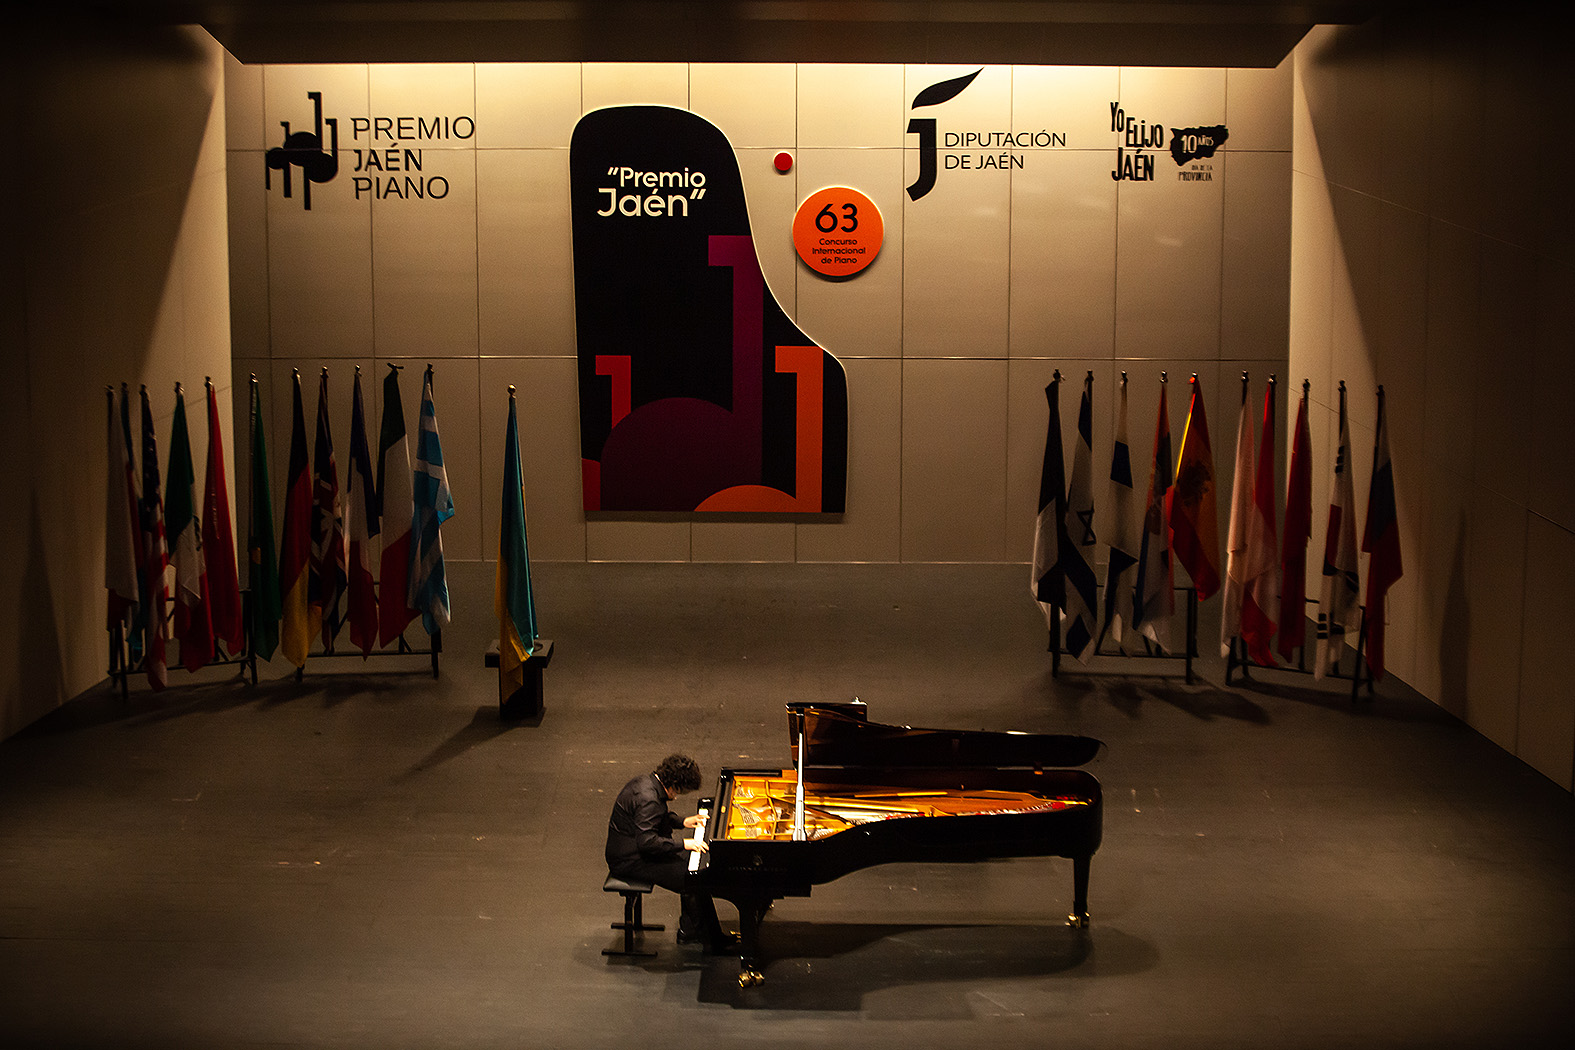 Foto de la noticia: Seis pianistas de seis nacionalidades distintas buscarán el pase a la prueba final del 63º Premio “Jaén” de Piano